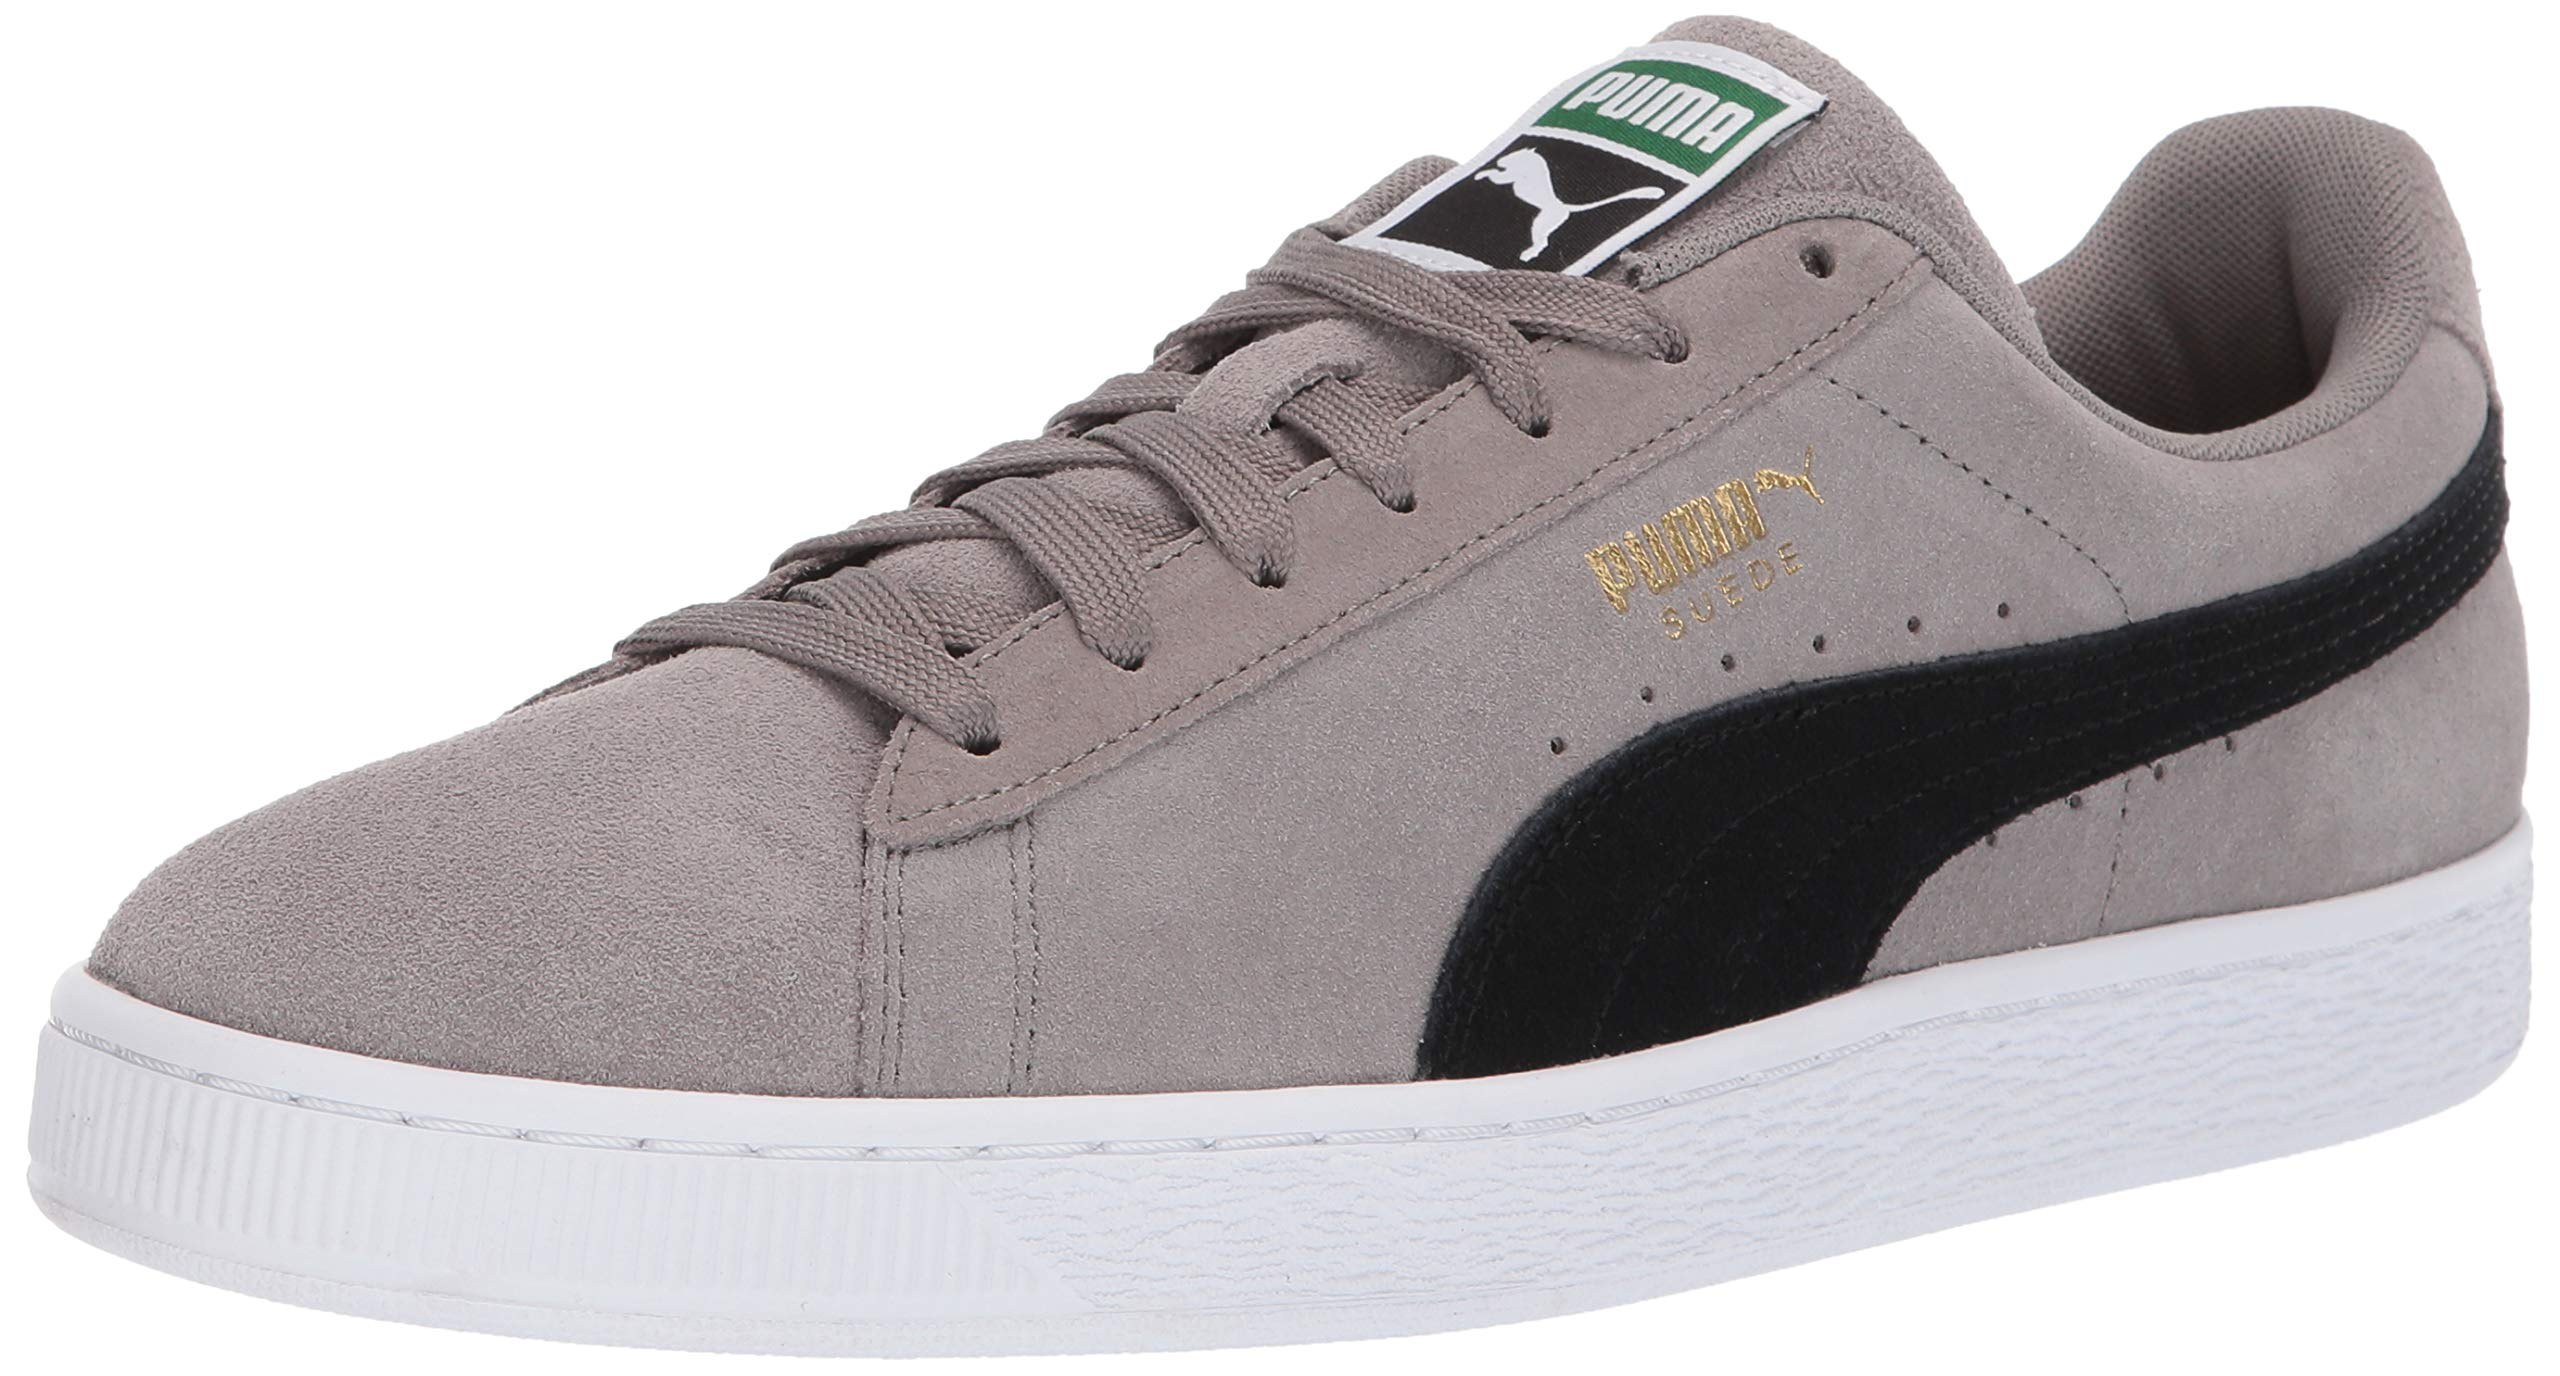 gray suede puma shoes